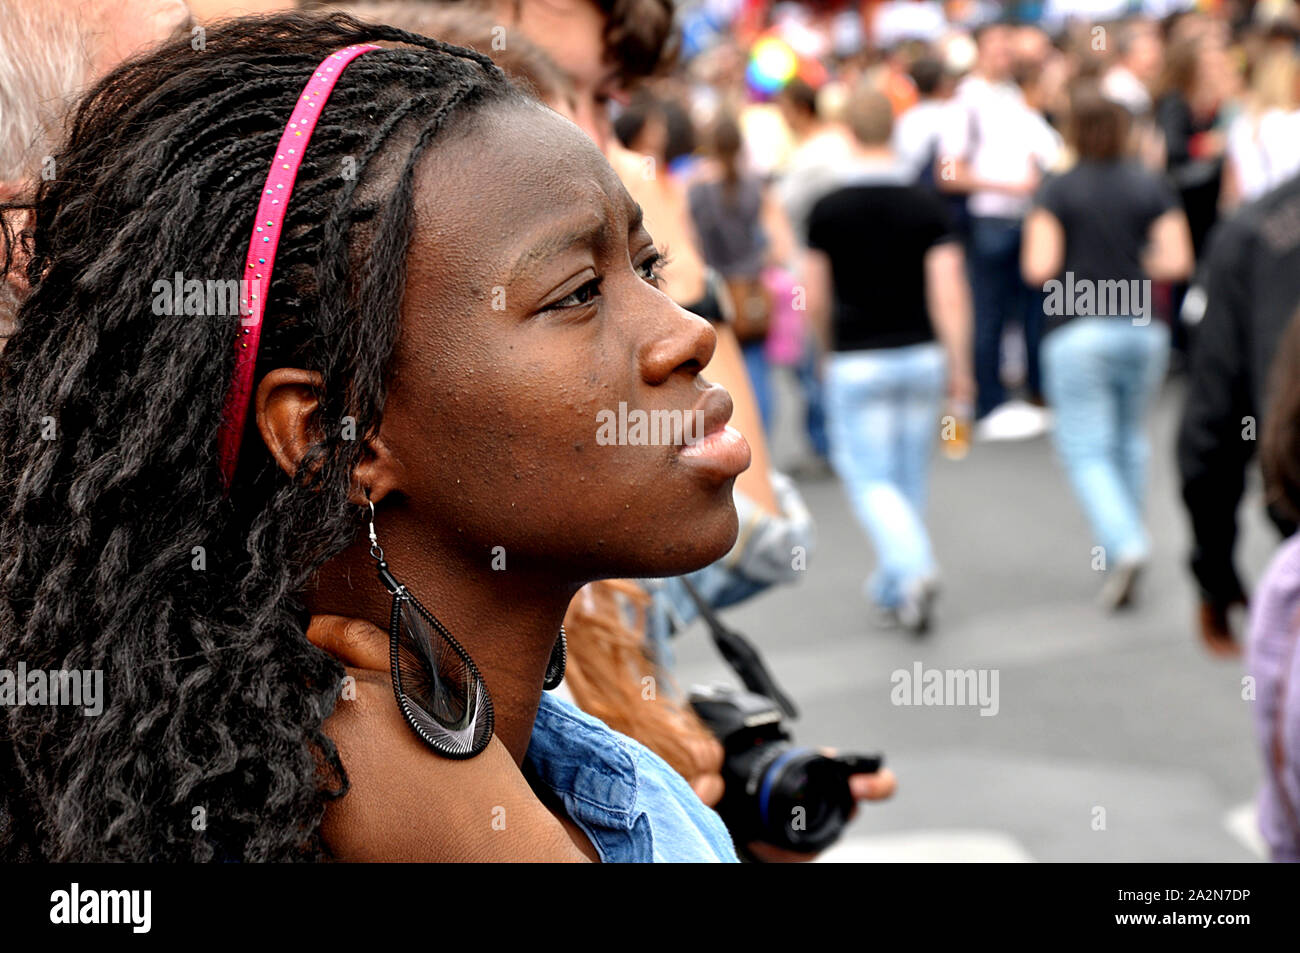 Une belle noire regarde les participants de la parade de la gay pride à Paris, en passant par la France, l'Europe. Banque D'Images